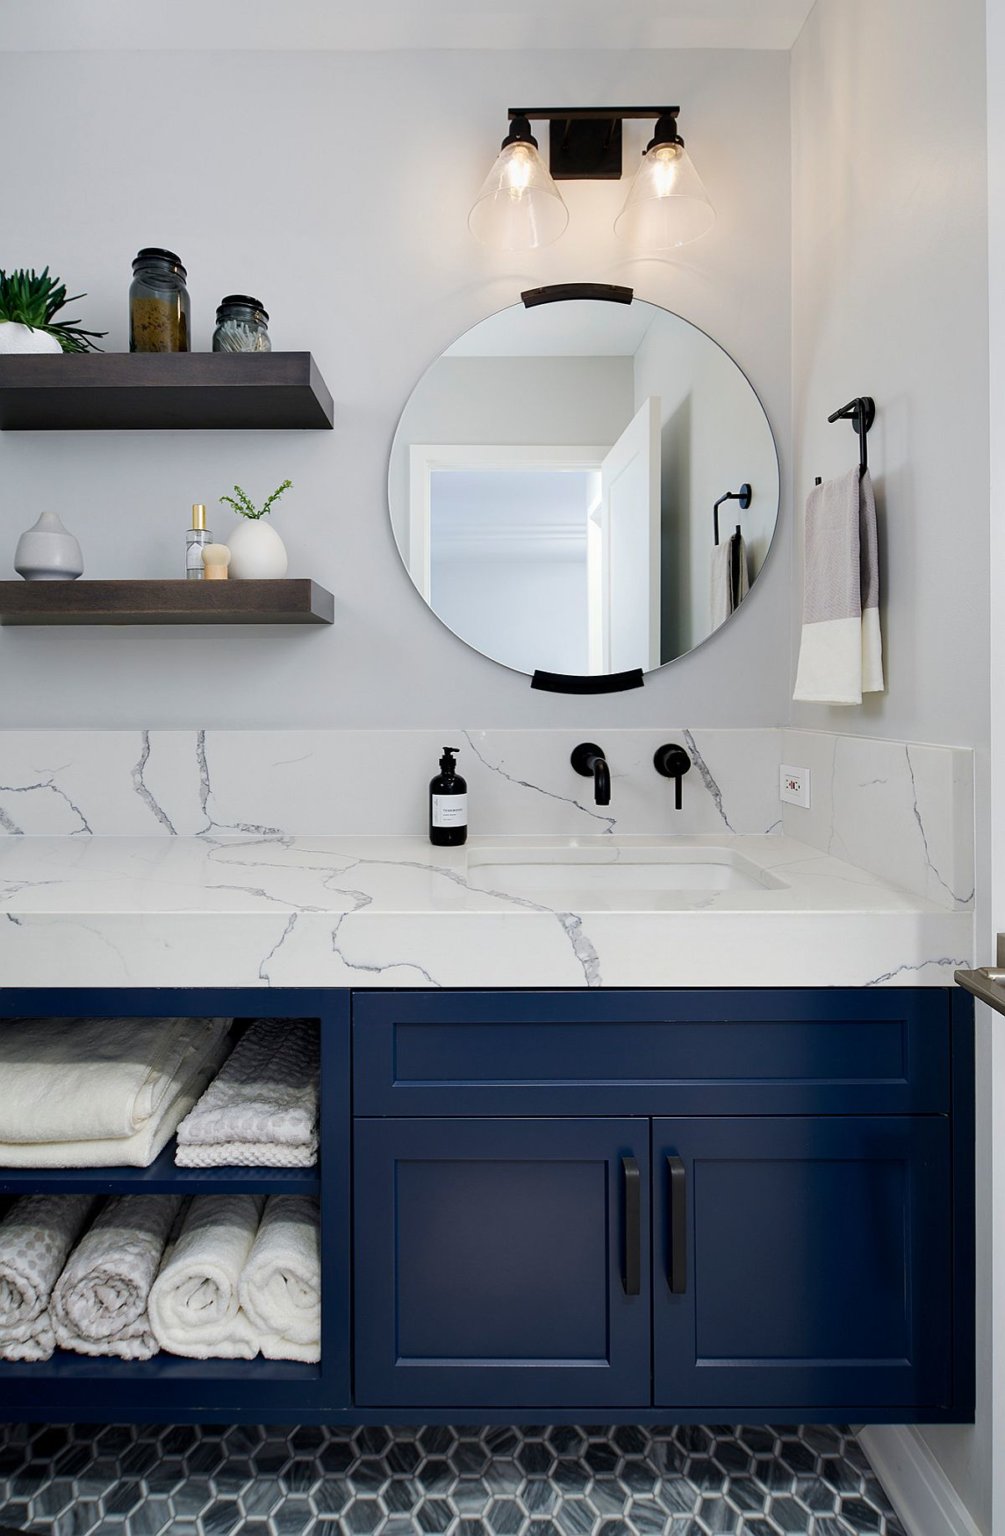 Hình ảnh một góc phòng tắm với nền tường màu trắng, gương tròn, tủ màu xanh dương đậm